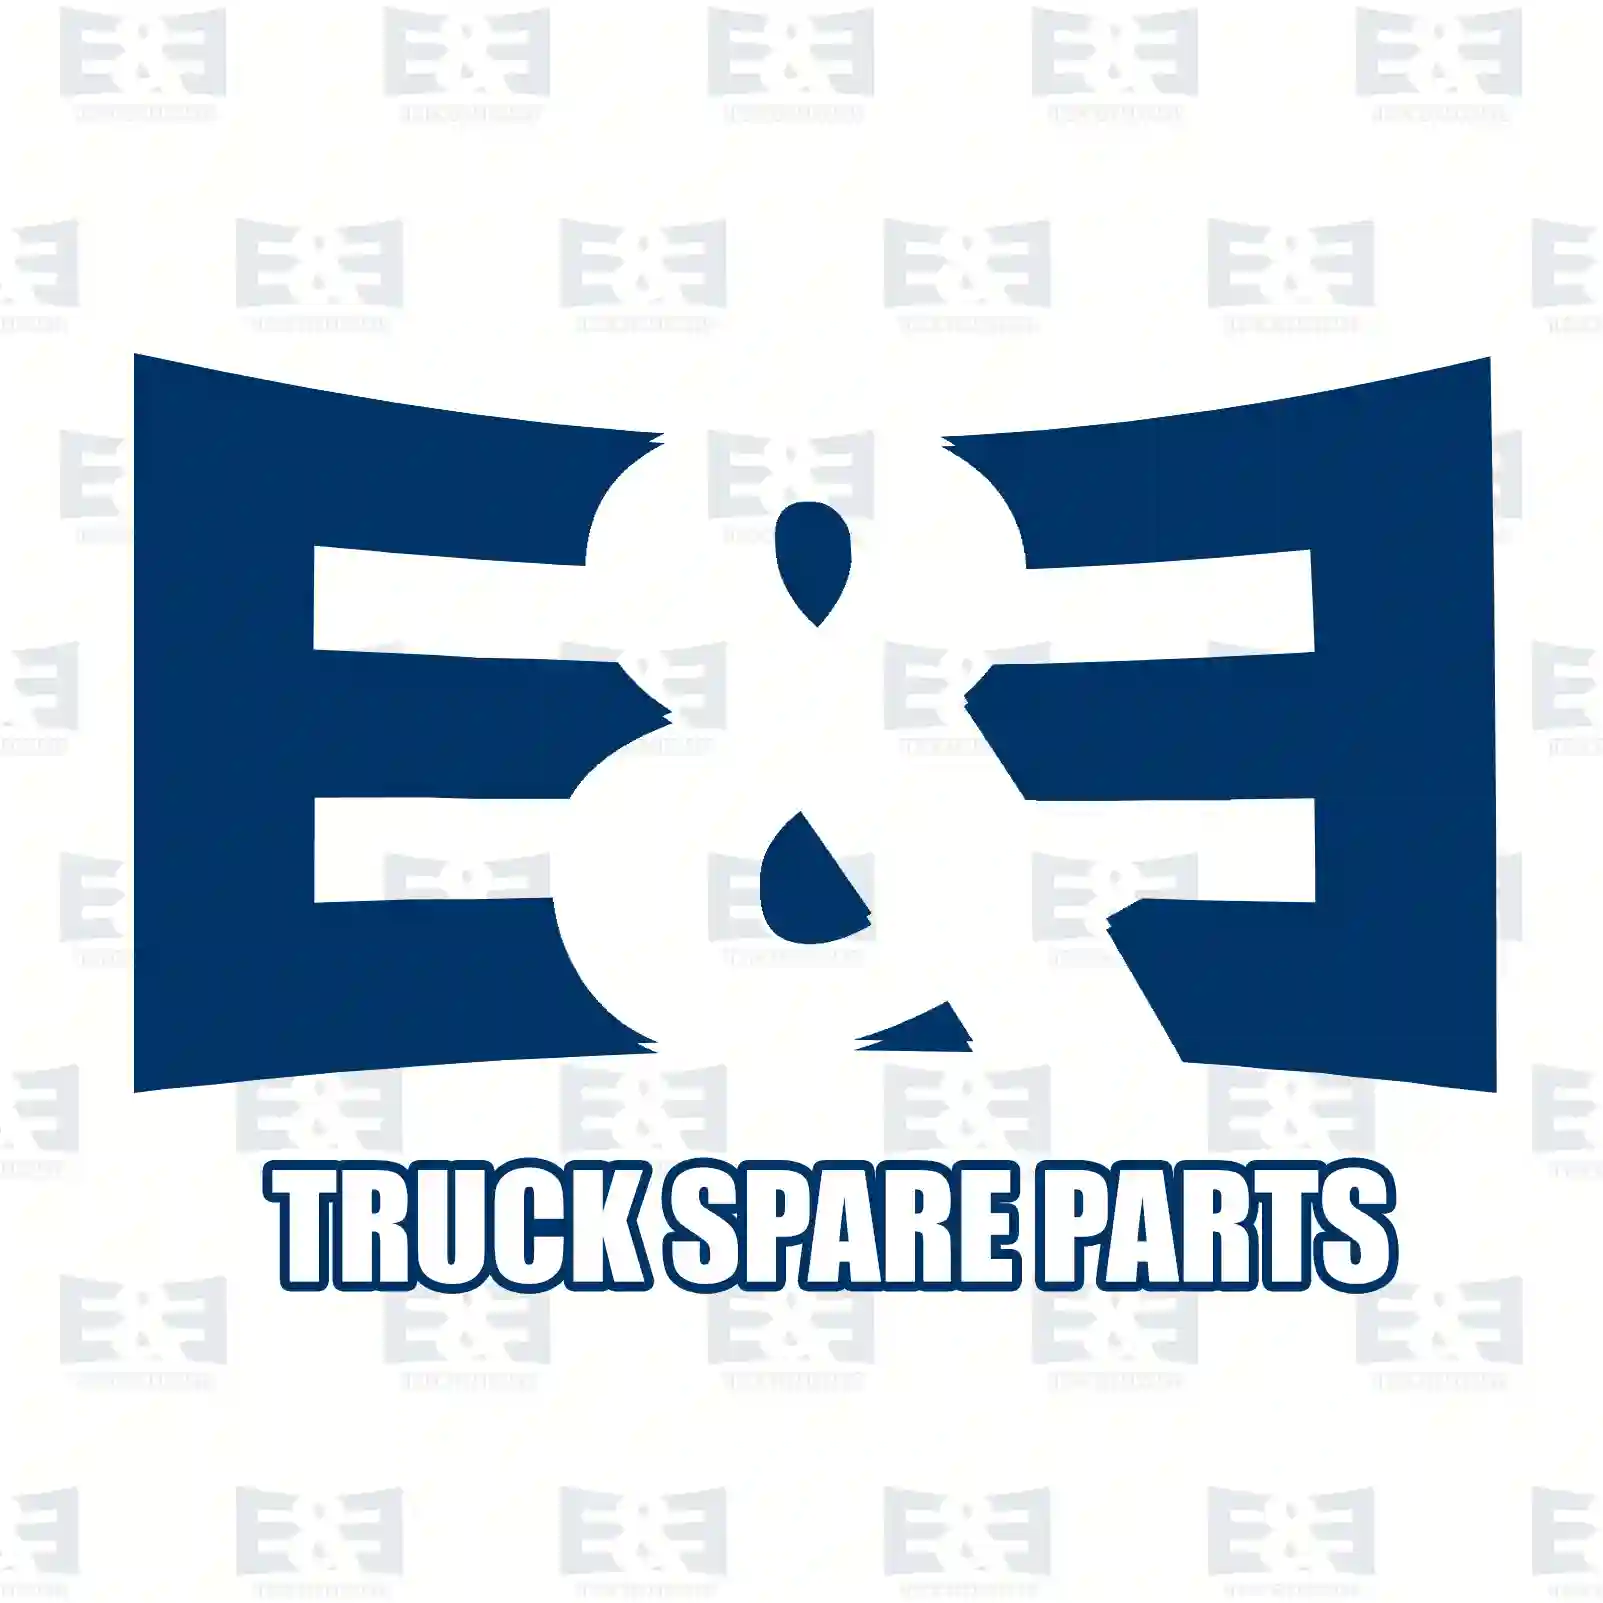 Clutch kit, 2E2288976, 81303059235S1 ||  2E2288976 E&E Truck Spare Parts | Truck Spare Parts, Auotomotive Spare Parts Clutch kit, 2E2288976, 81303059235S1 ||  2E2288976 E&E Truck Spare Parts | Truck Spare Parts, Auotomotive Spare Parts